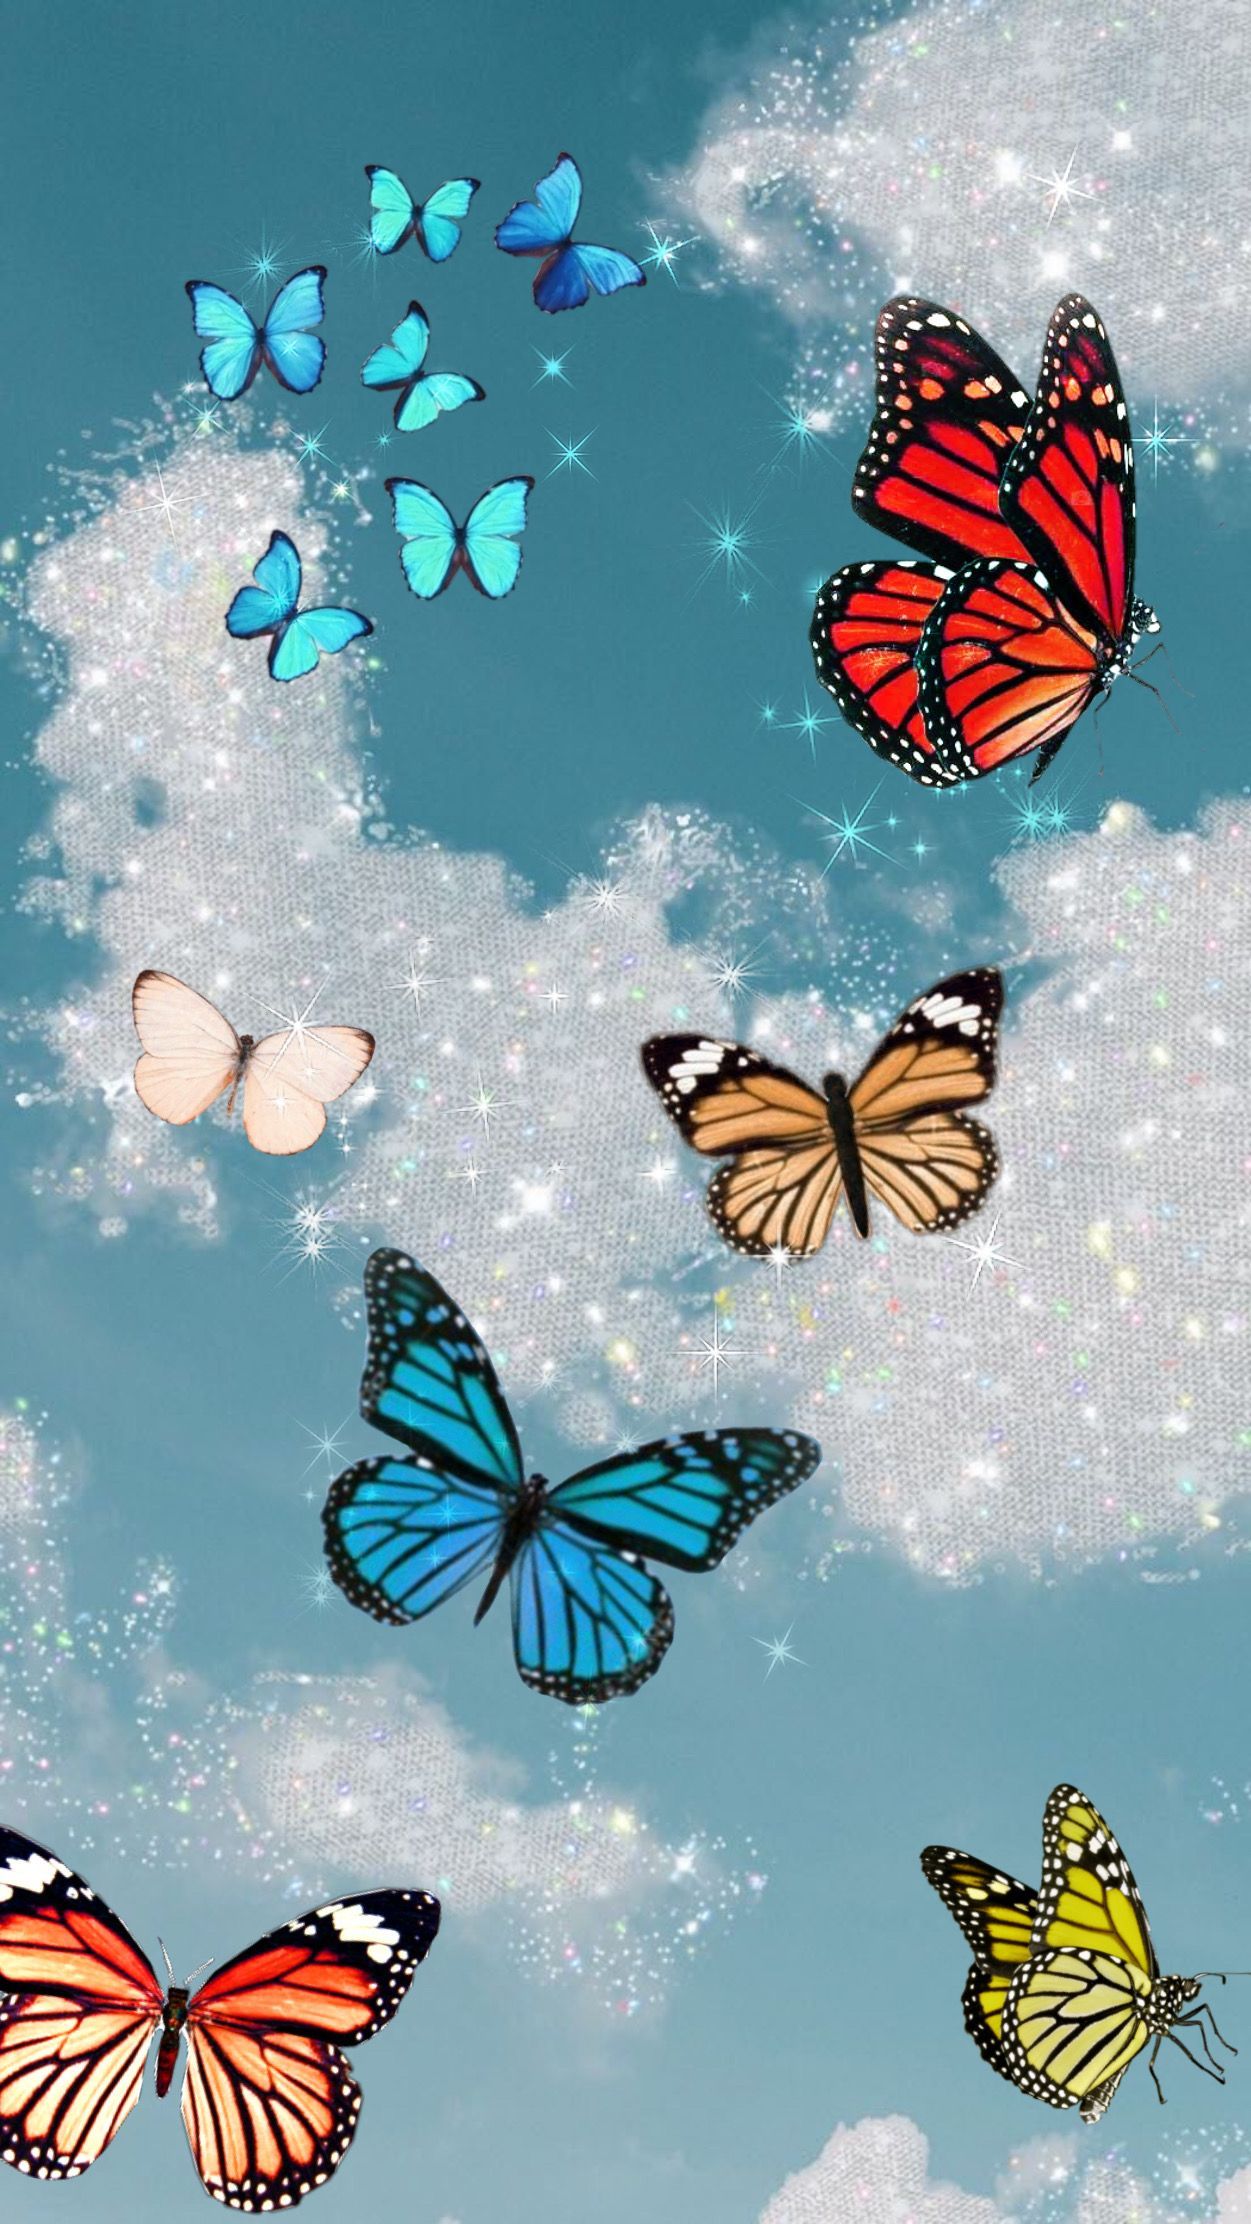 วอลเปเปอร์. Butterfly wallpaper iphone, iPhone wallpaper tumblr aesthetic, Cute patterns wallpaper